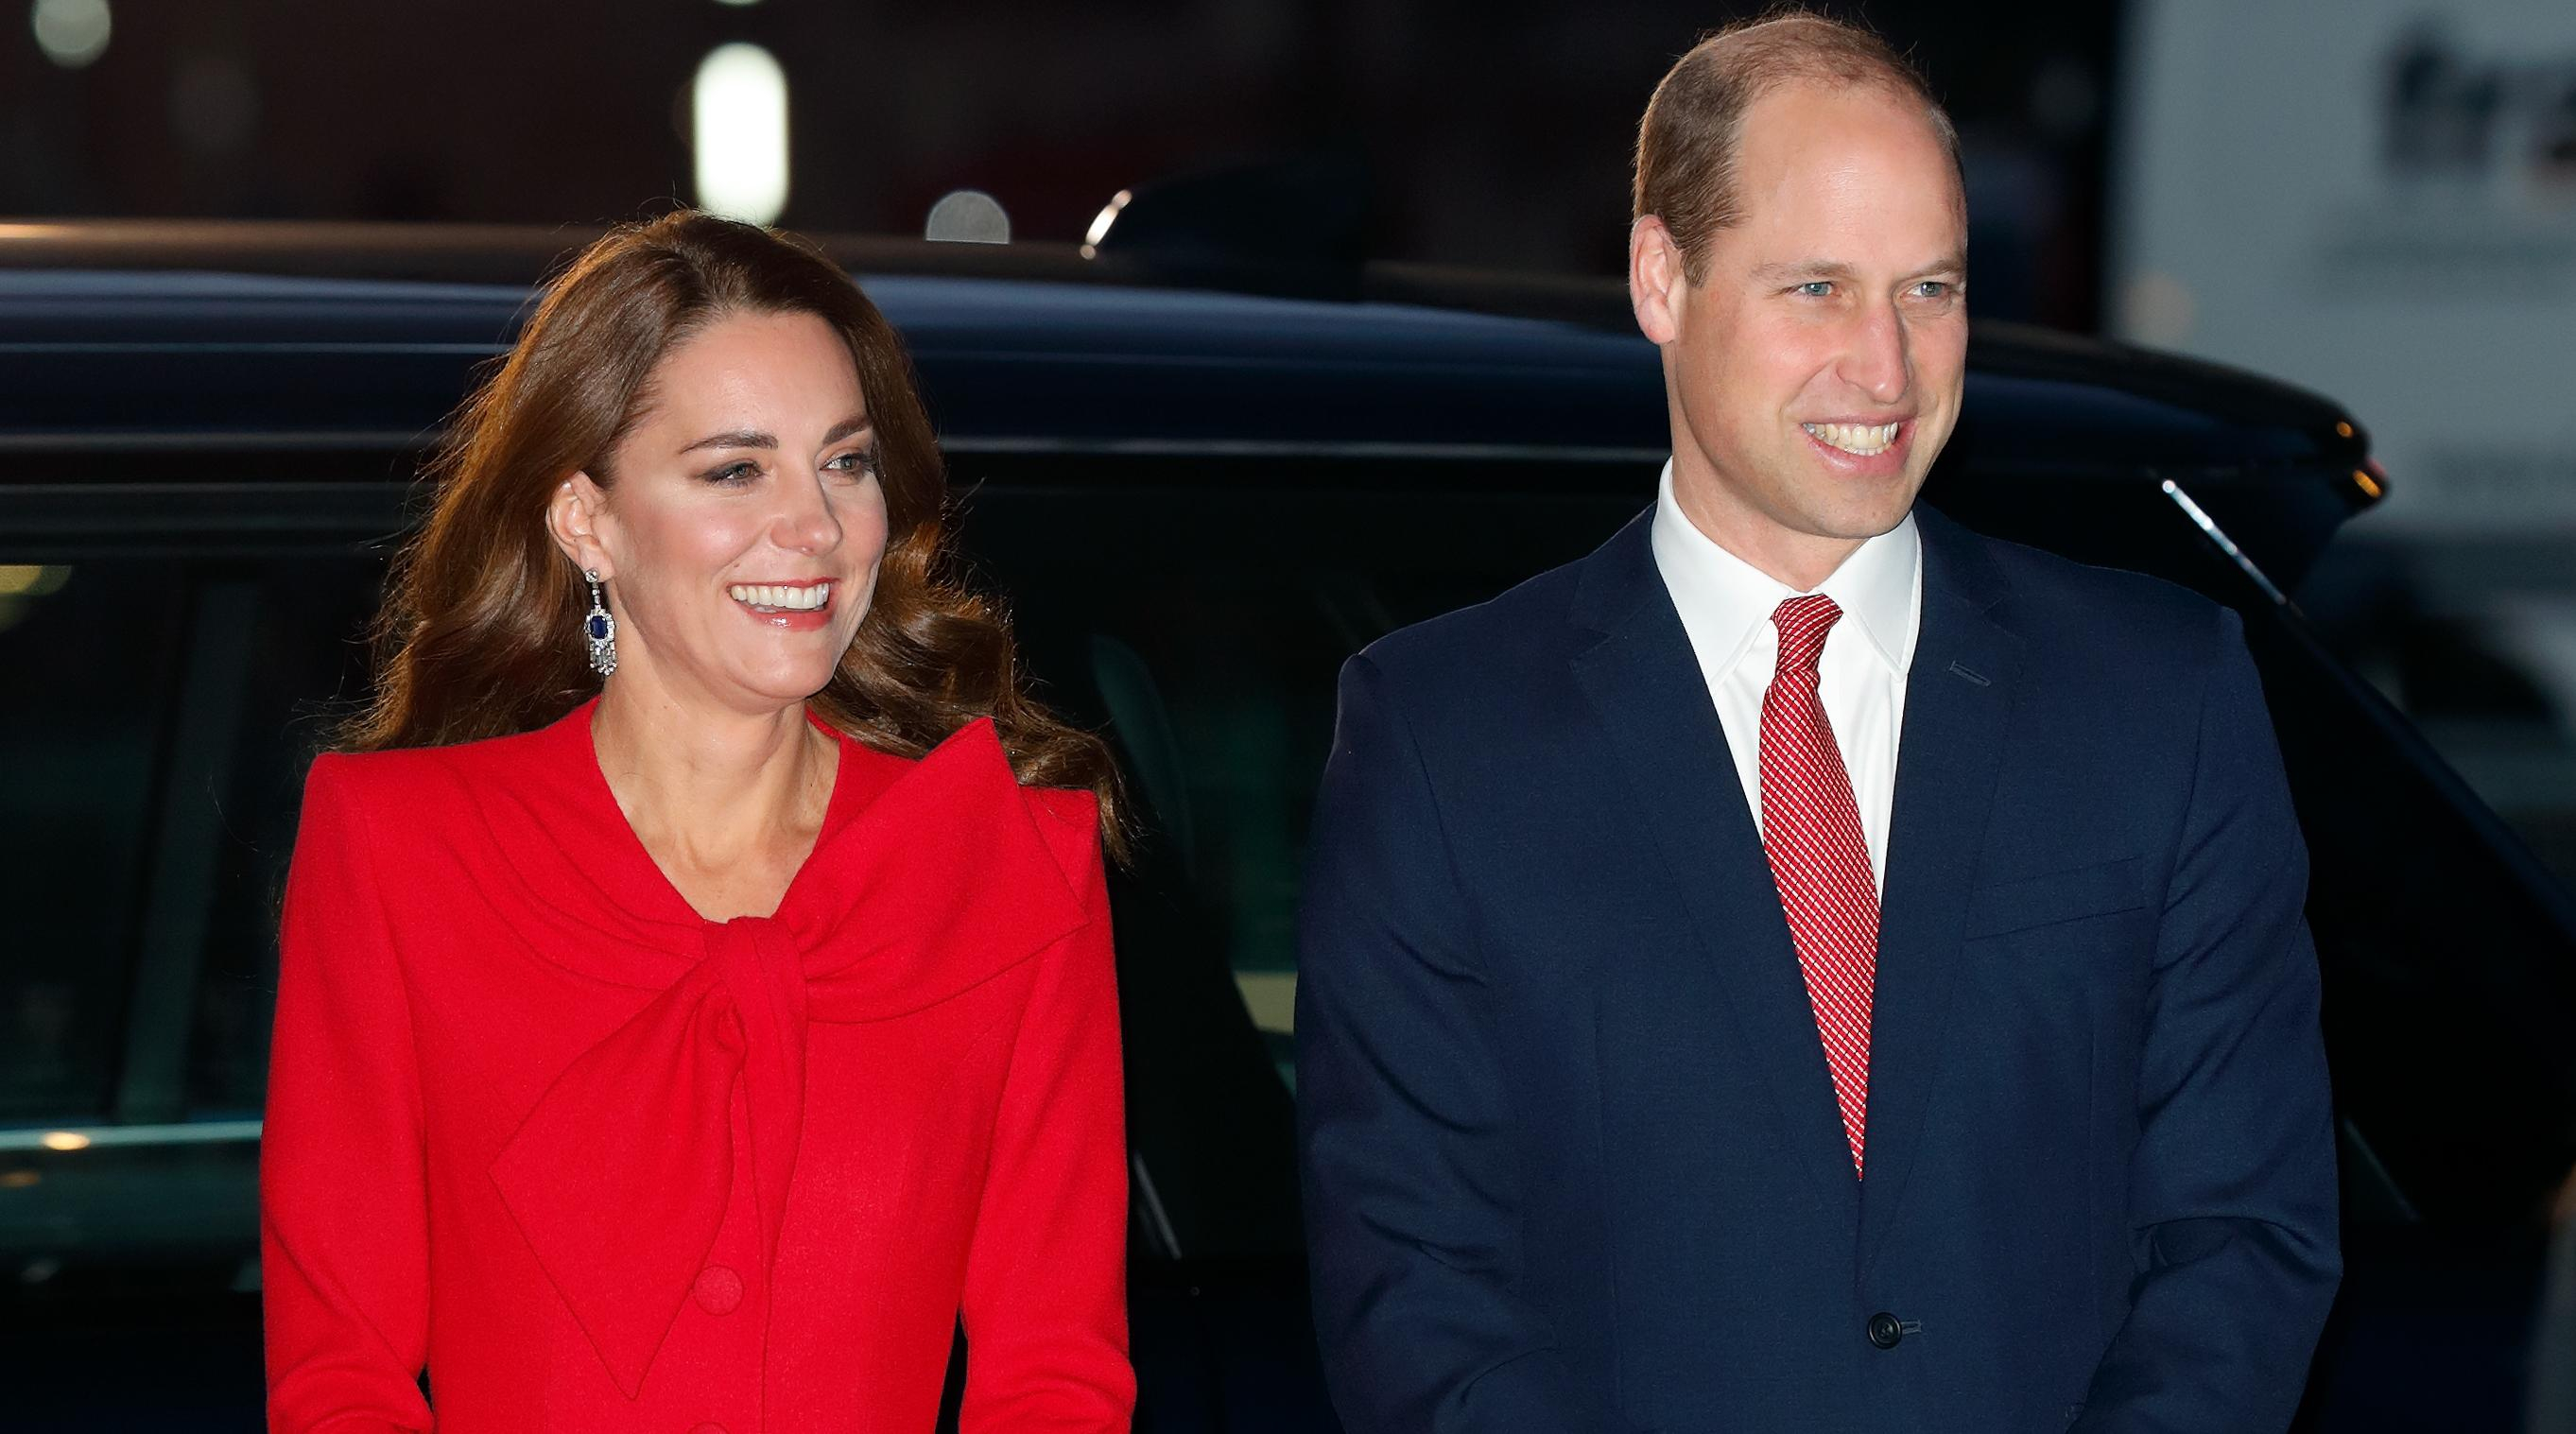 Кейт Миддлтон, принц Уильям и другие королевские особы посетили рождественский концерт
 